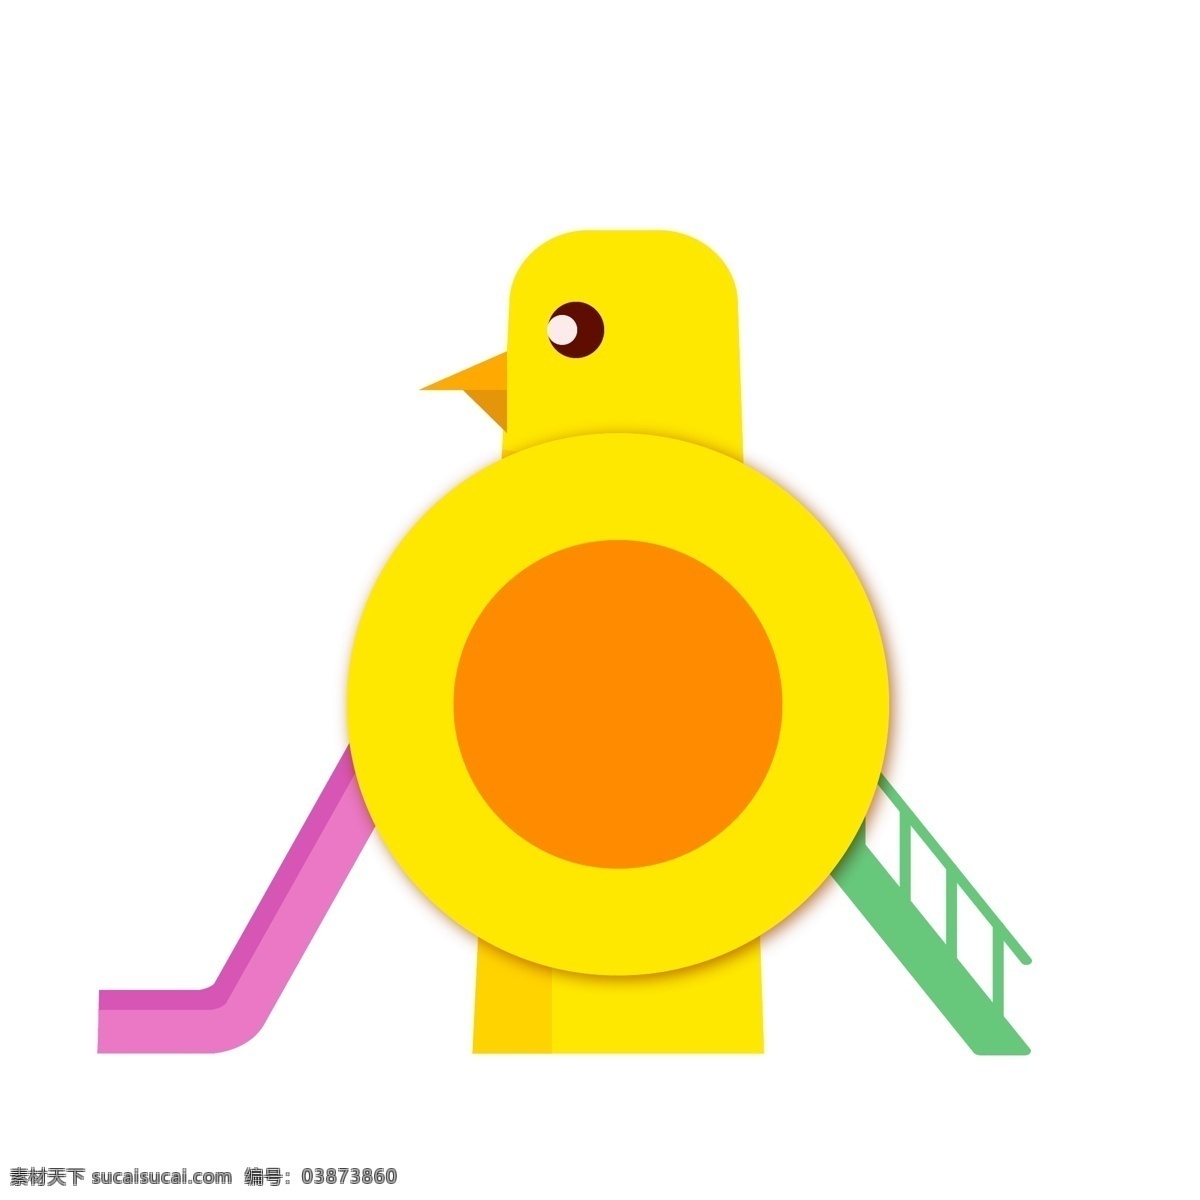 儿童节 玩具 滑梯 插画 黄色的小鸟 红色的滑梯 玩具的滑梯 粉色的滑梯 绿色的滑梯 卡通的插画